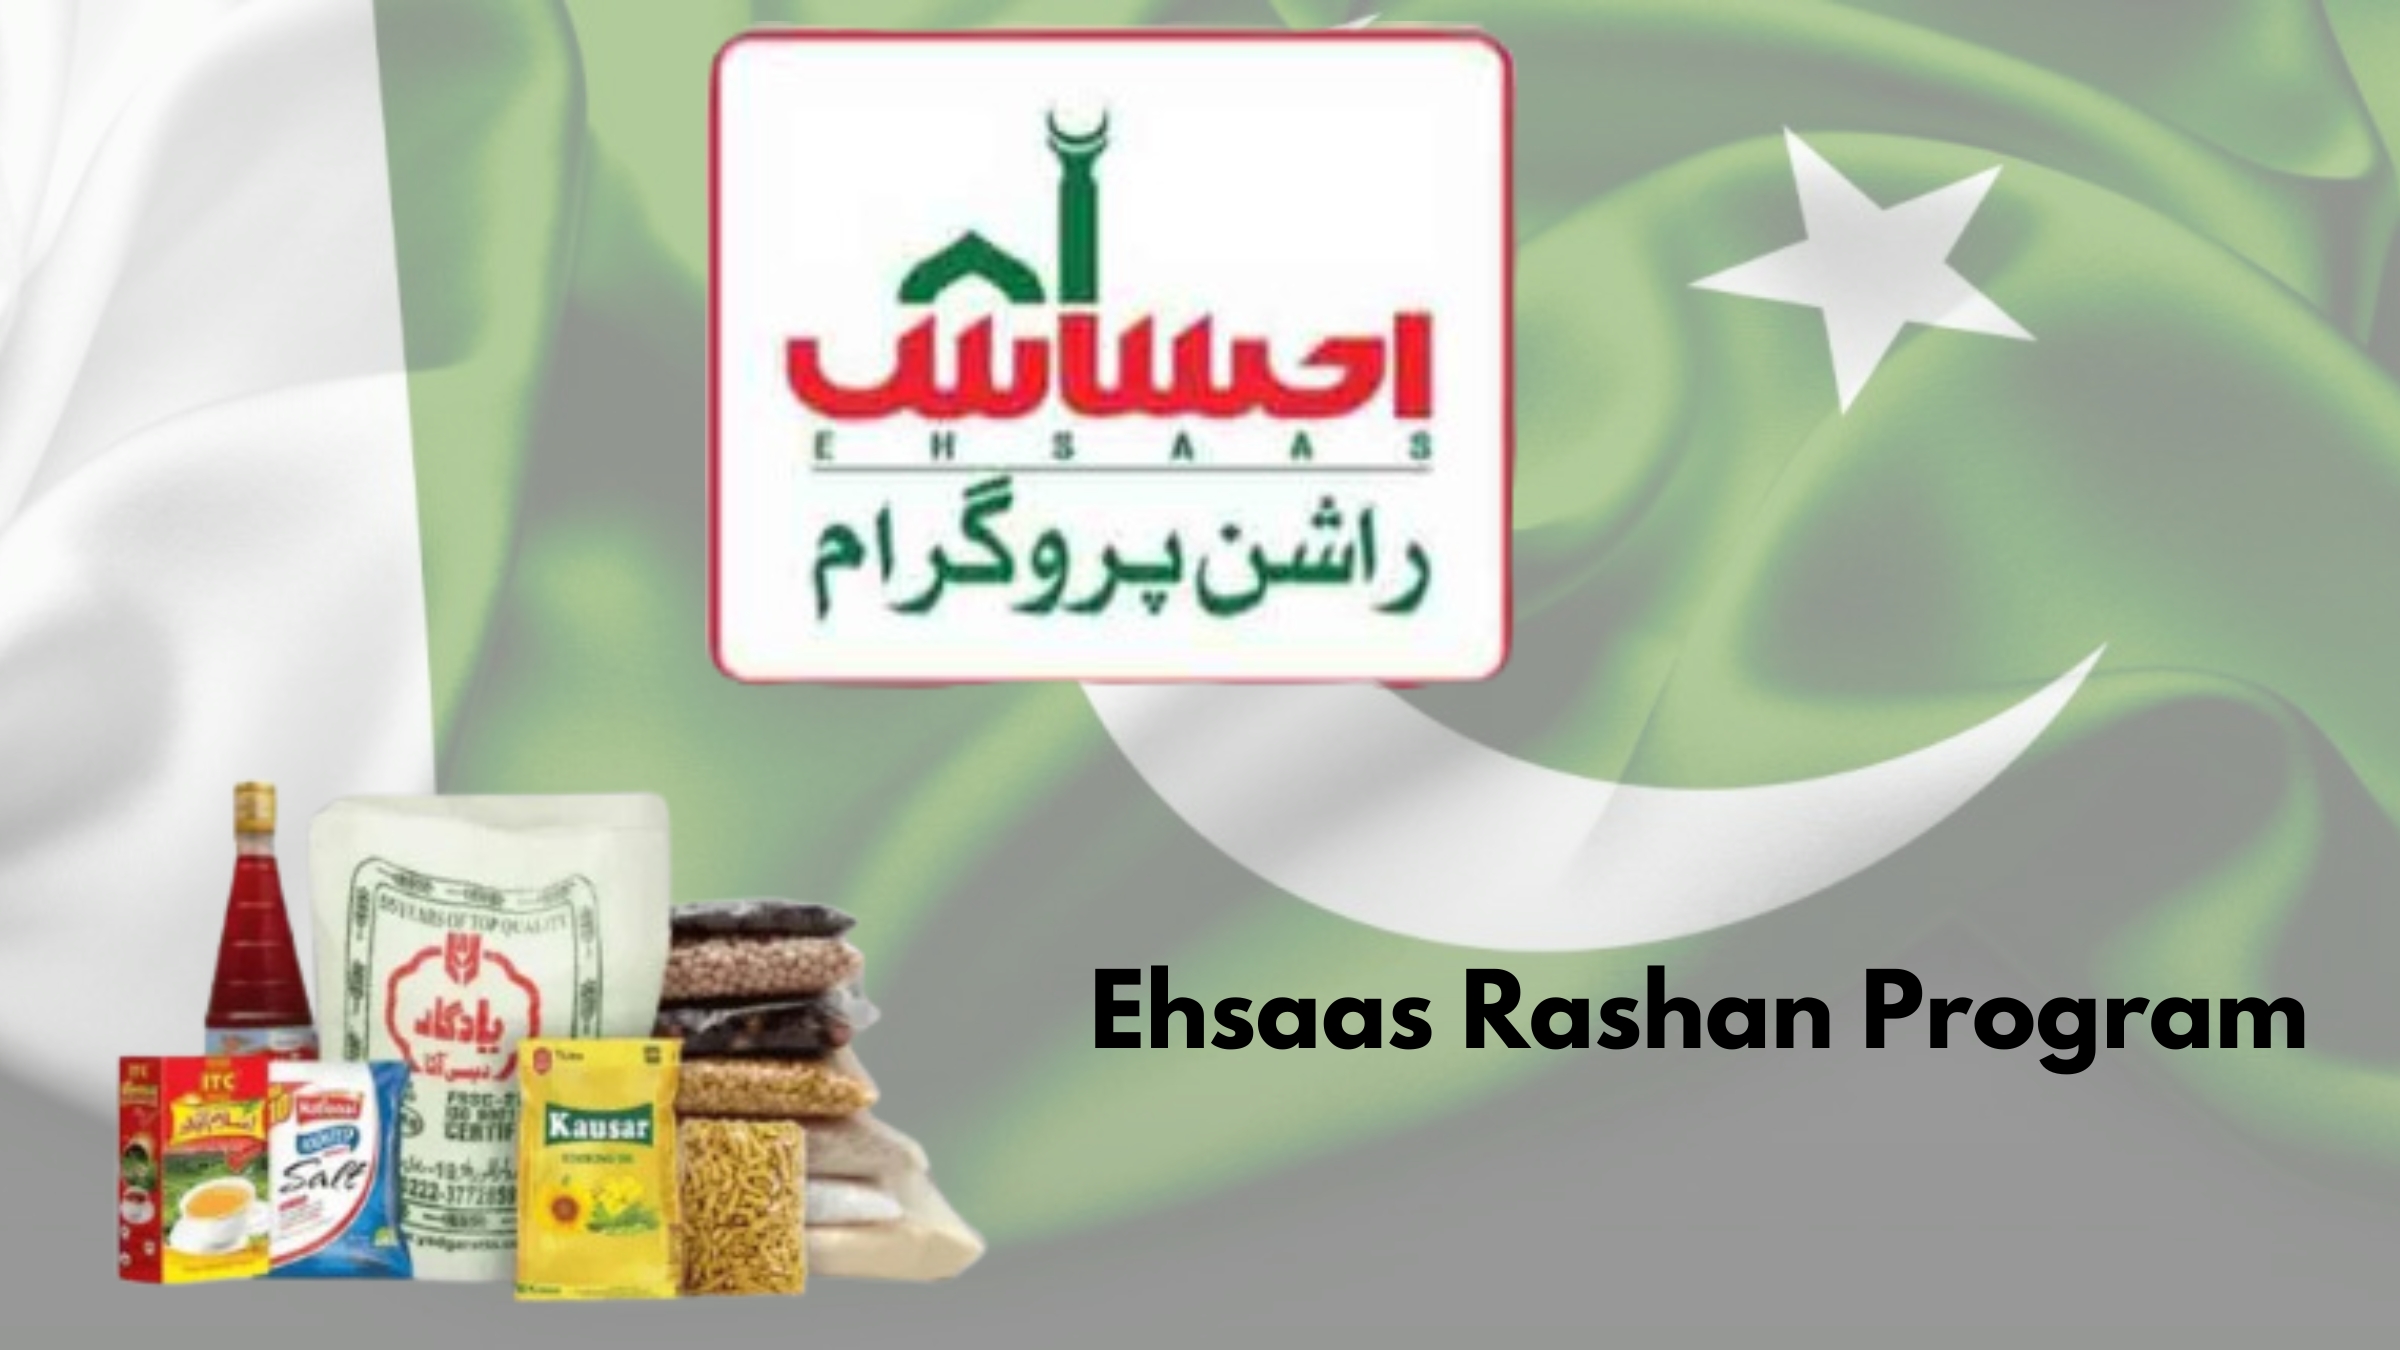 Understanding the Ehsaas Rashan Program